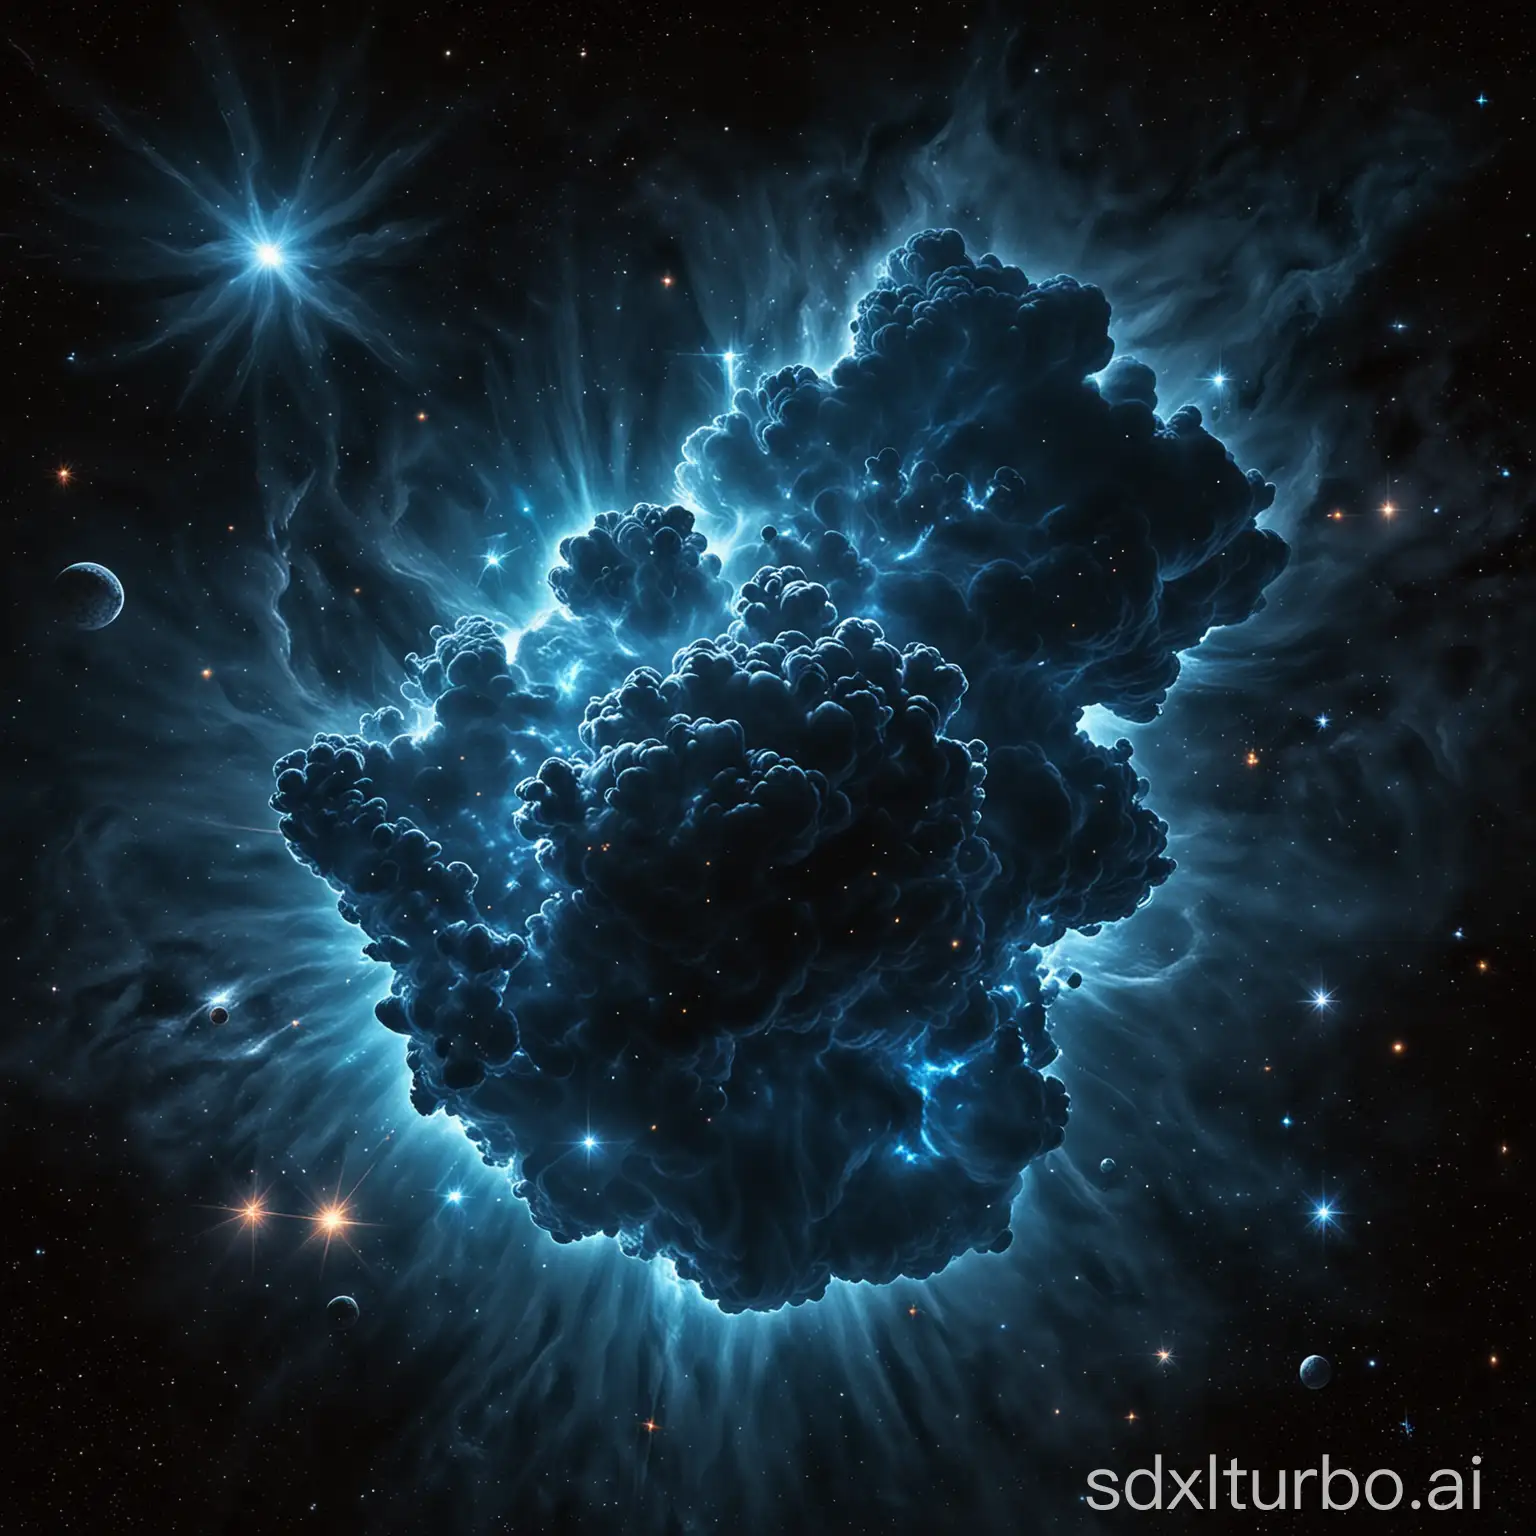 Dark-Blue-Cloud-Nebula-in-Space